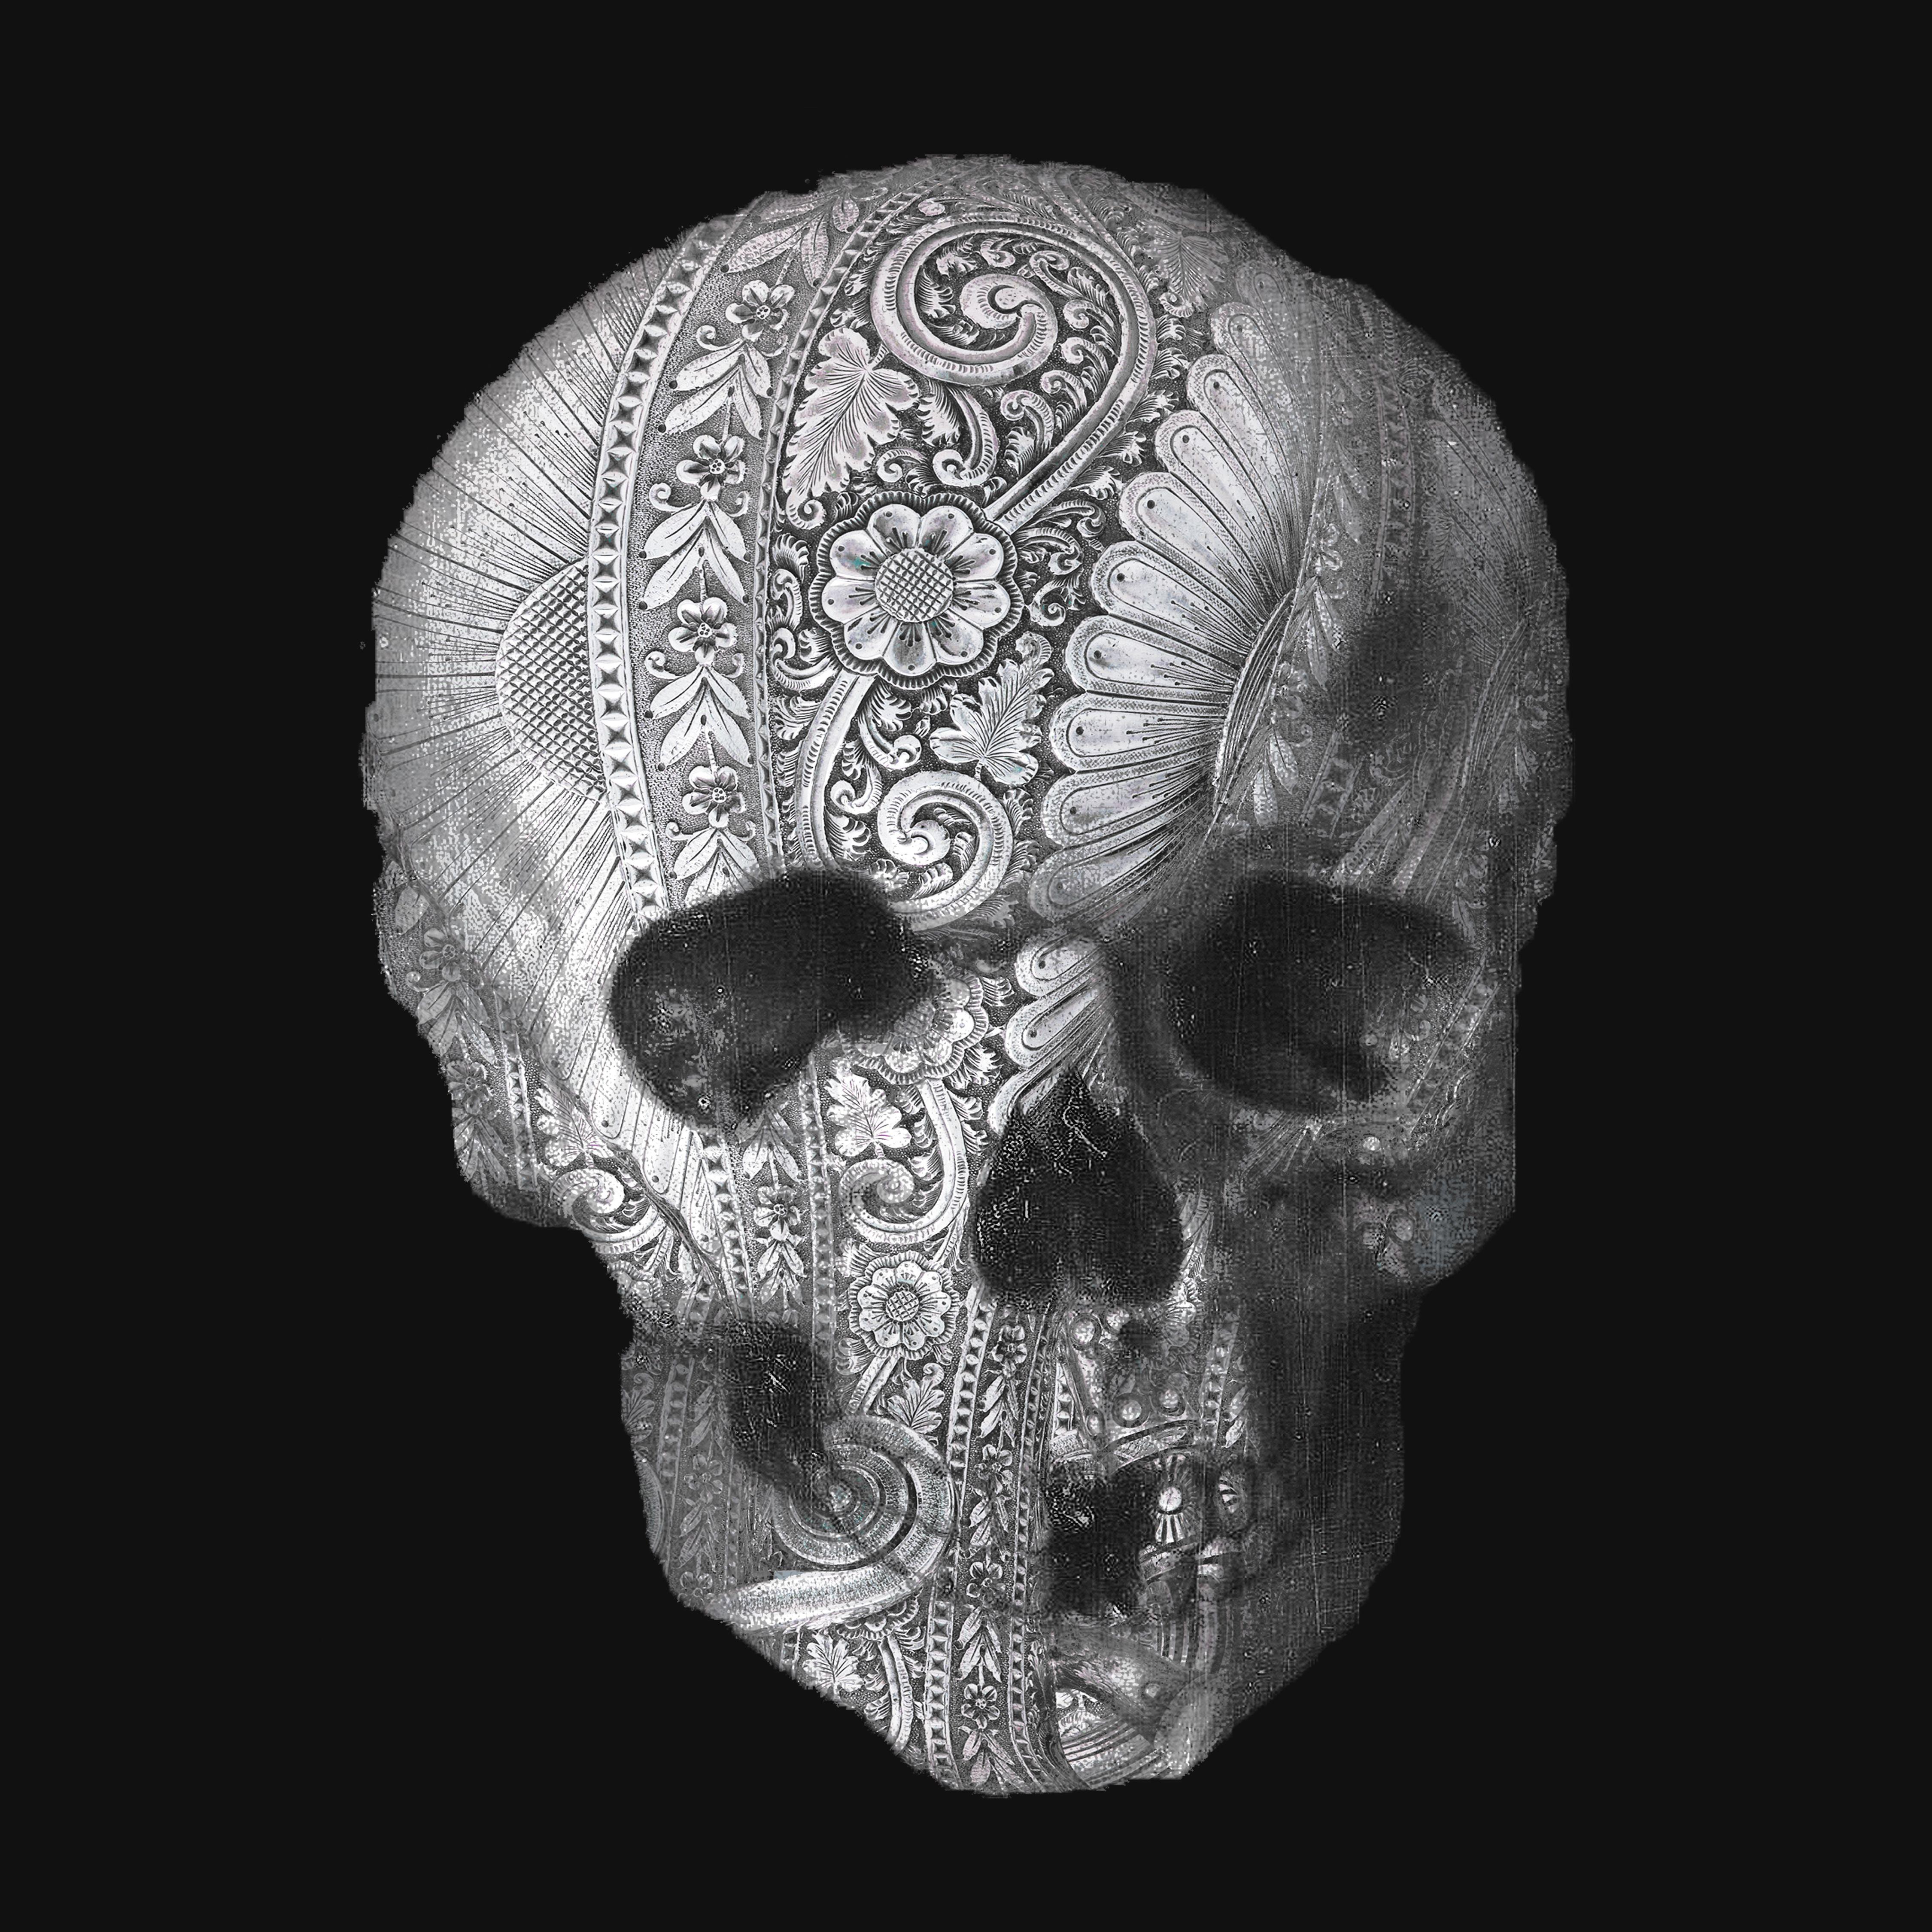 Metal Skull, Mixed Media on Canvas - Mixed Media Art by Tony Rubino